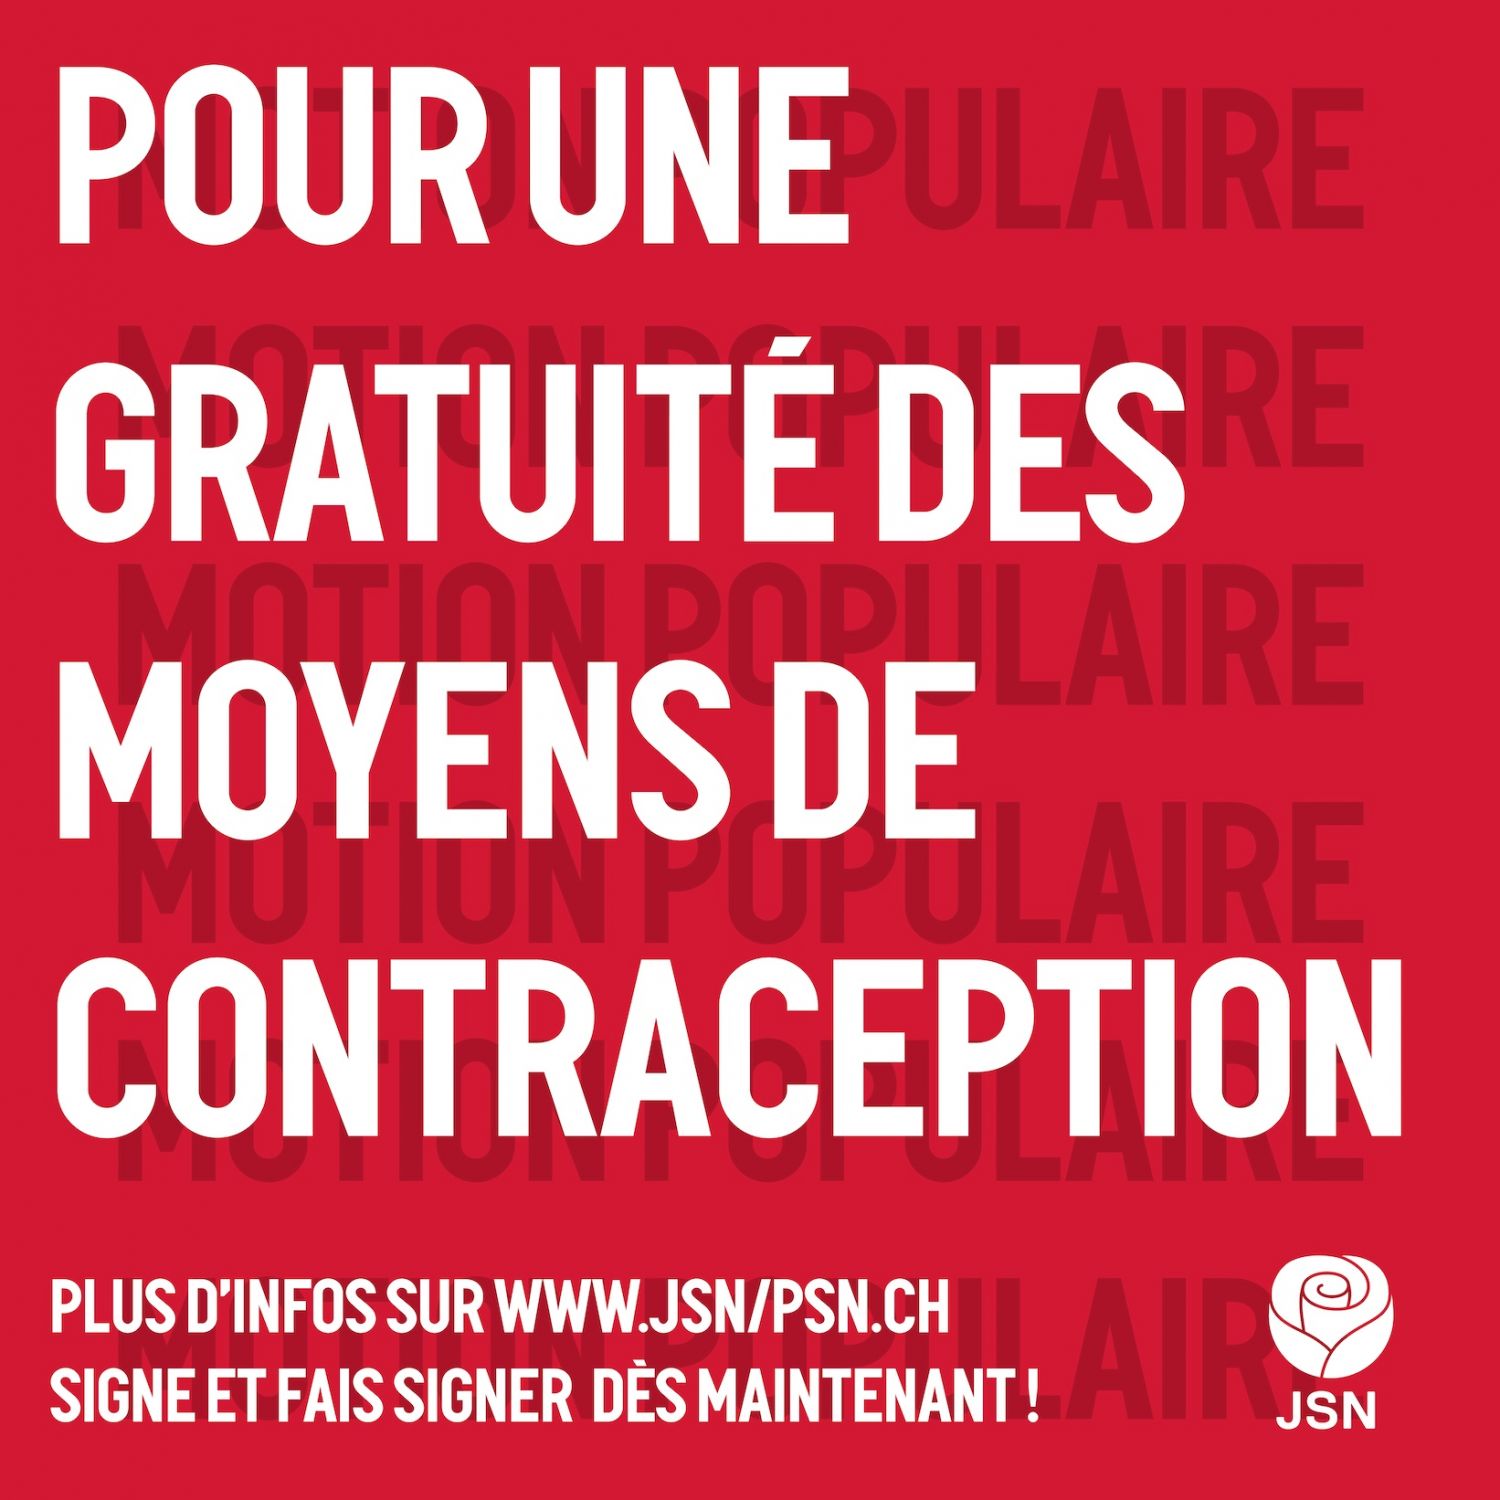 La JSN lance une motion populaire pour une contraception gratuite!